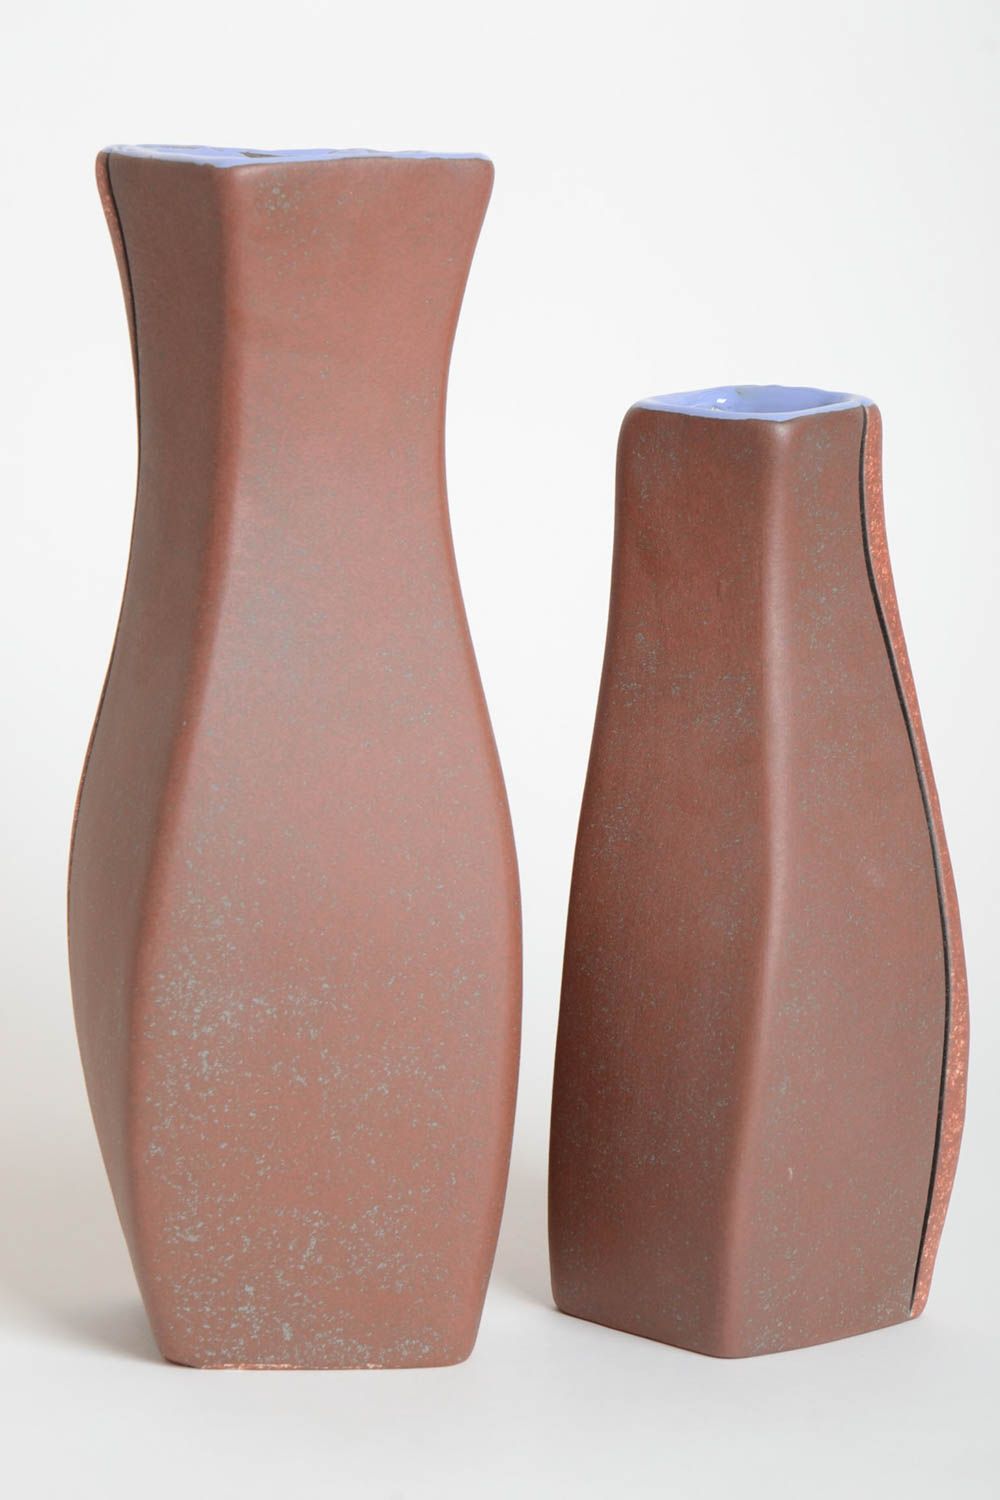 Handmade Keramik Vasen Haus Deko hohe ausgefallene Vasen mit Mustern 2 Stück foto 4